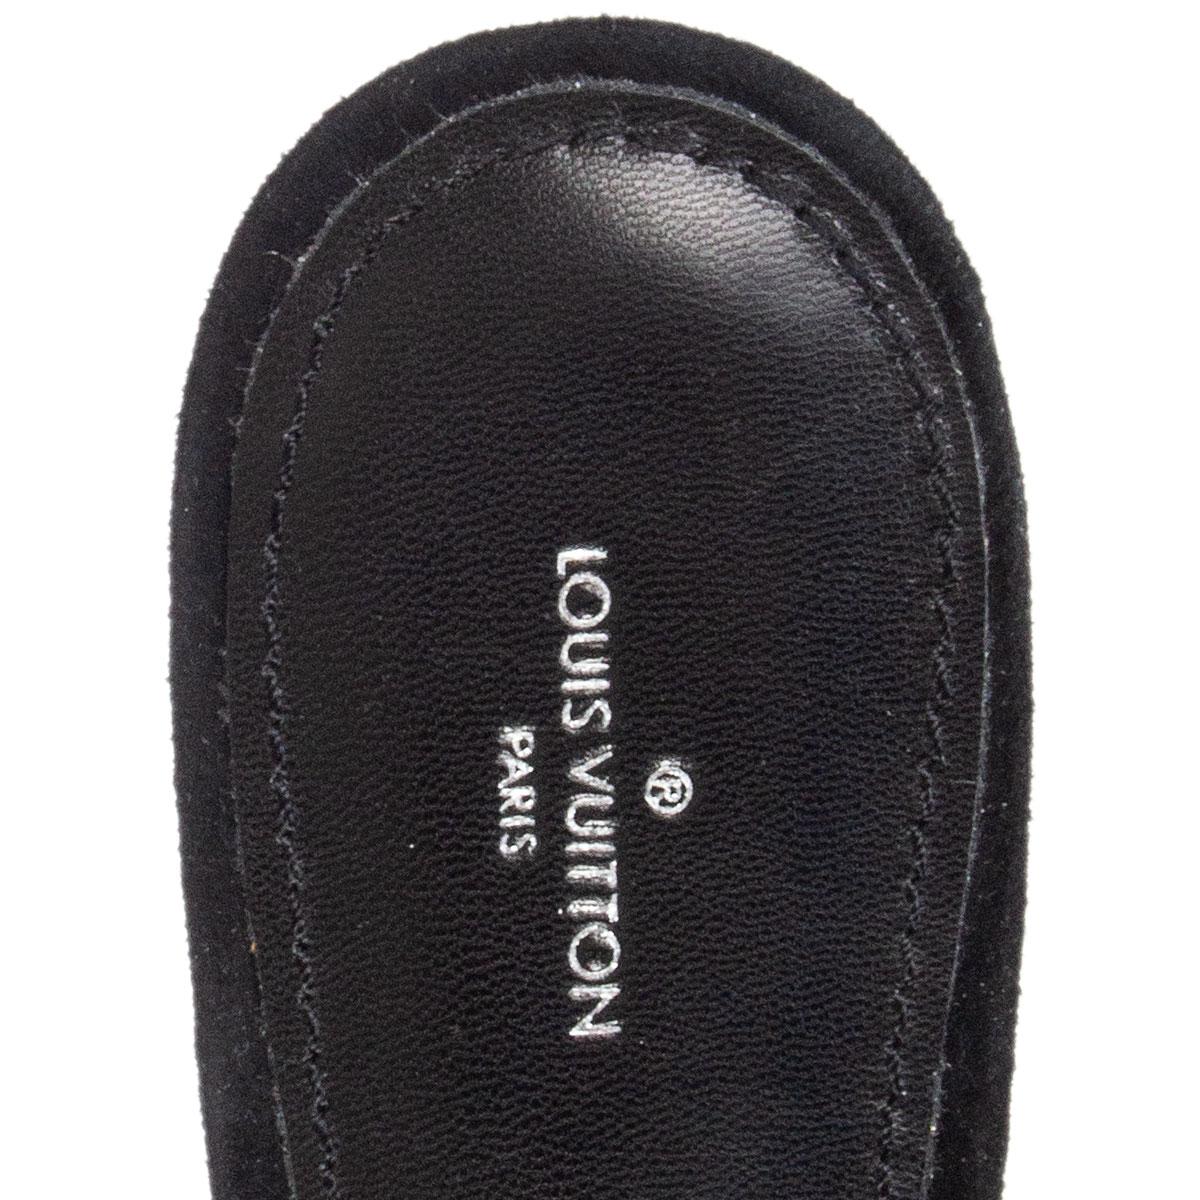 Black LOUIS VUITTON black MINK EMBELLISHED Slides Sandals Shoes 39